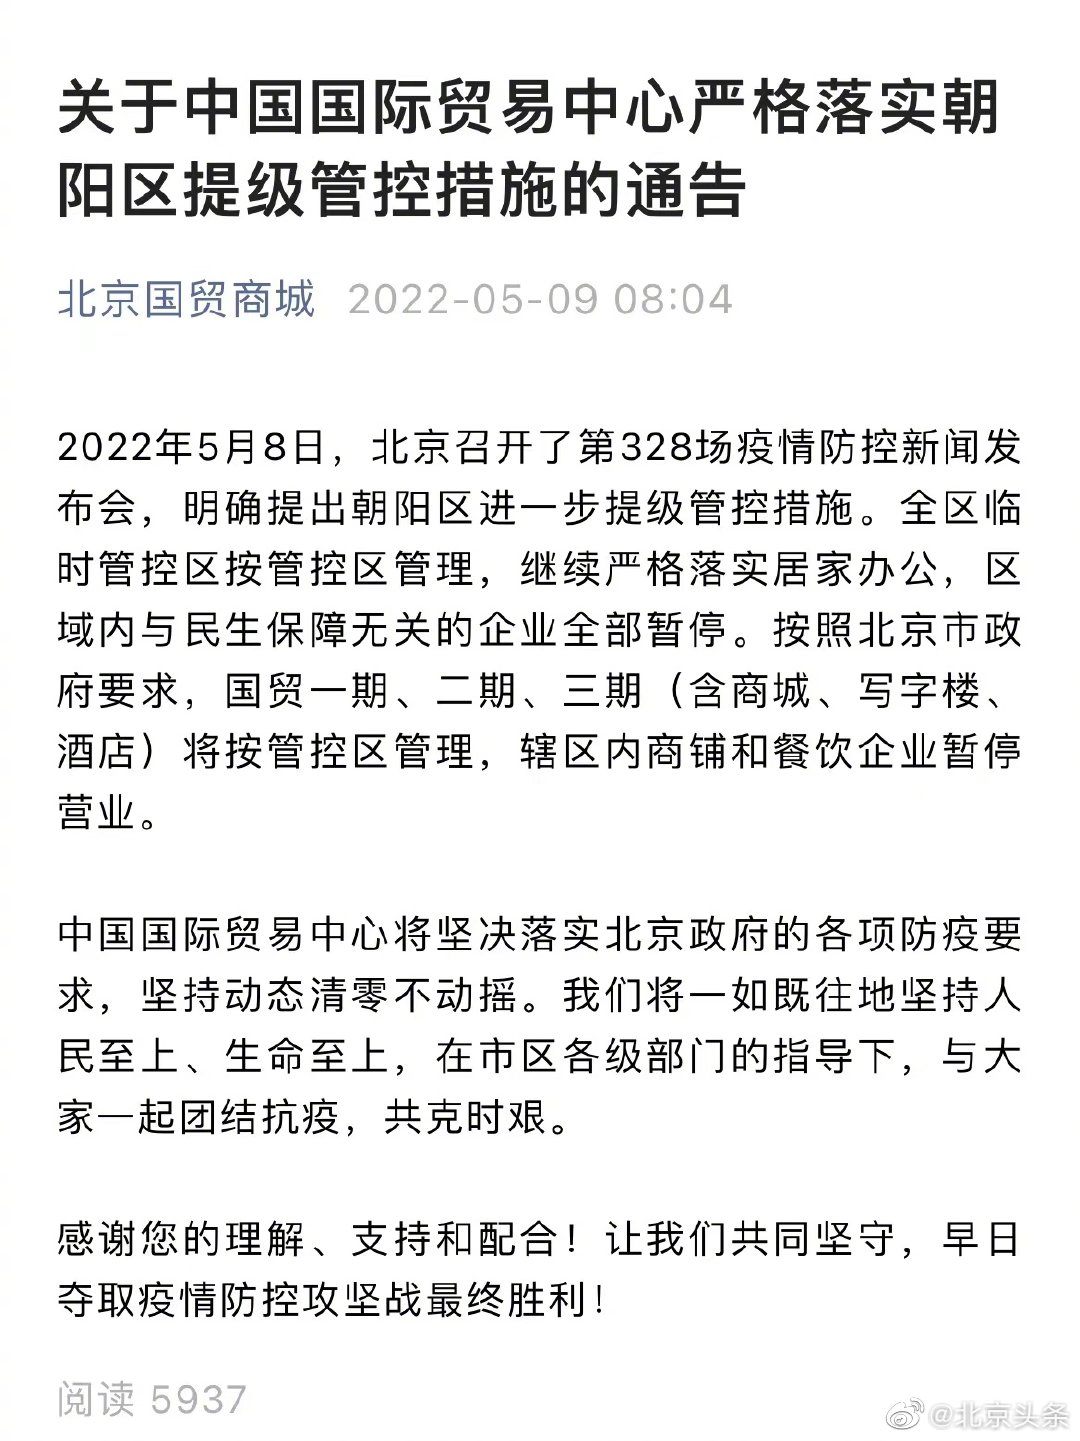 北京国贸商城商铺和餐饮企业暂停营业